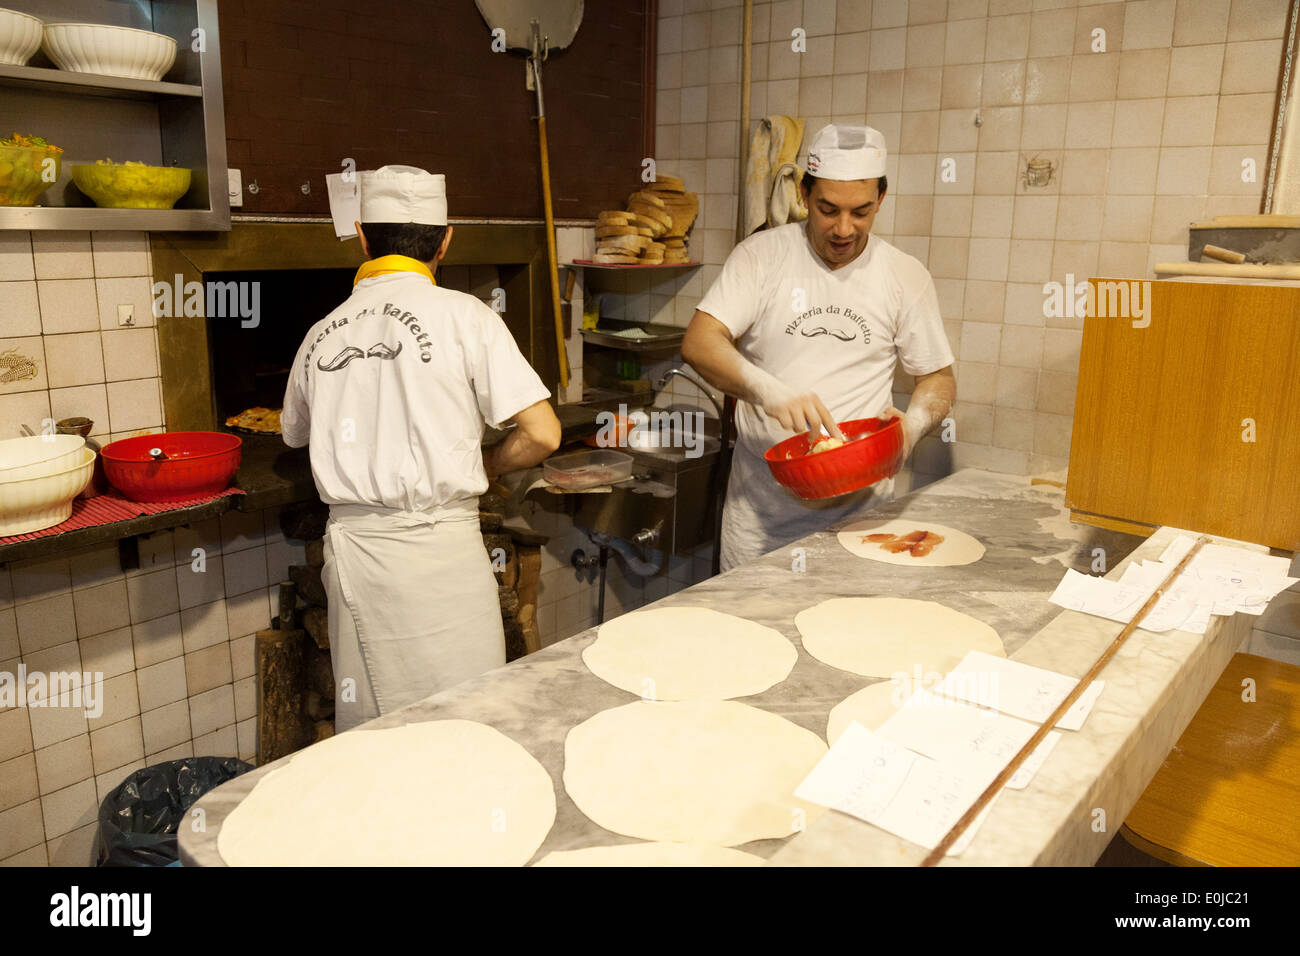 Los cocineros hacer pizzas en la cocina de pizzeria da Baffetto en Roma haciendo pizzas pizza Roma, Italia Europa Foto de stock